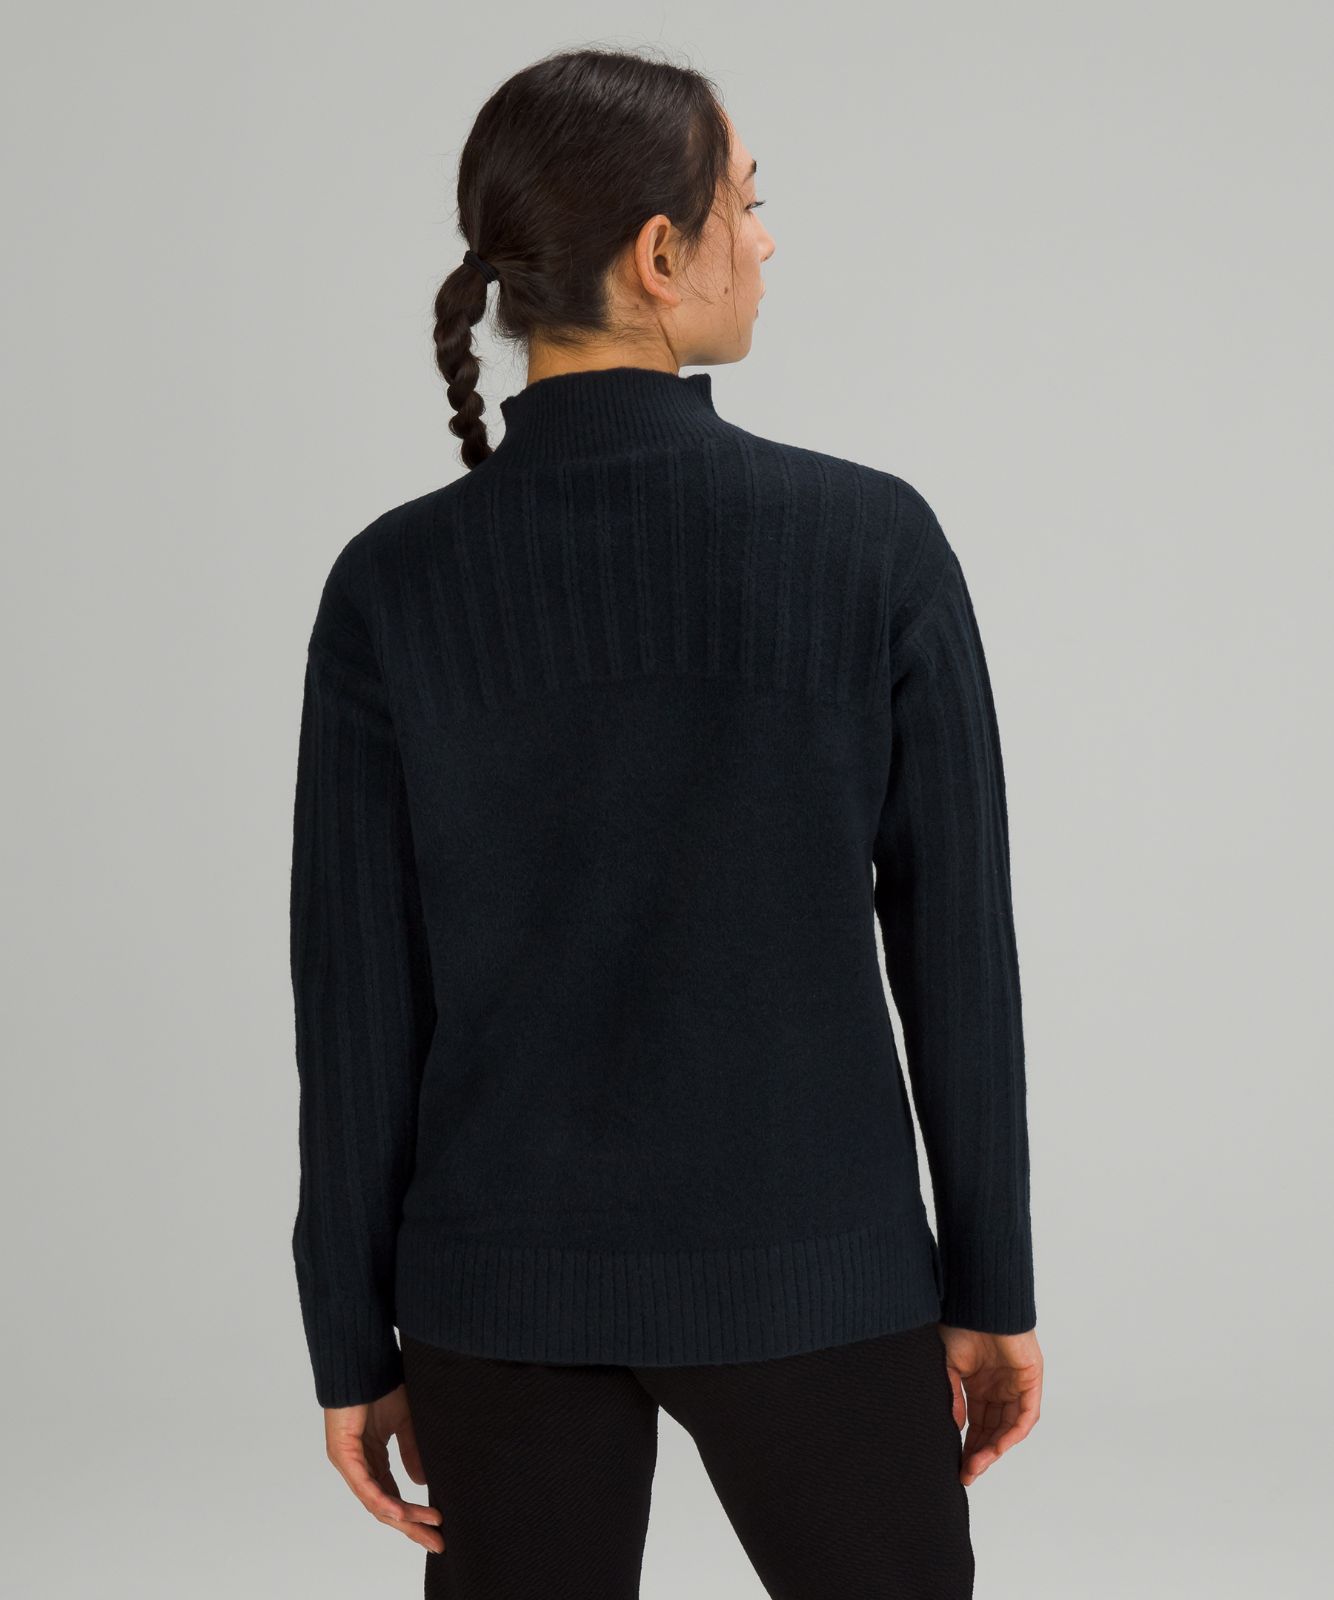 Twin Rib Turtleneck Sweater